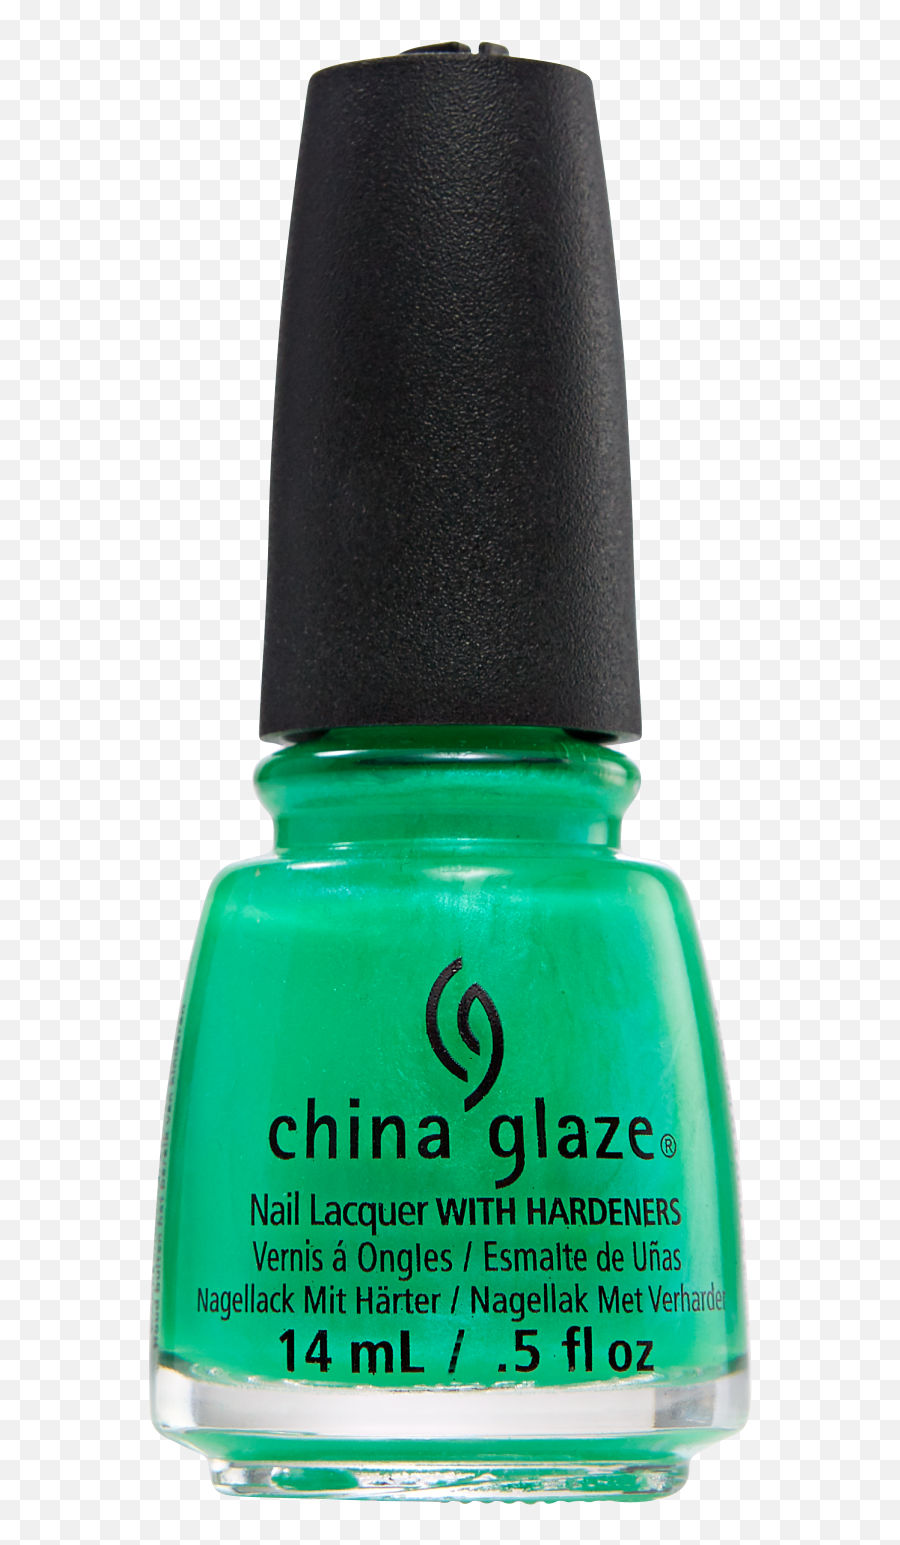 Neon Nail Lacquer Gel Nails At Home China Glaze Neon Emoji,Emoji Nail Polish